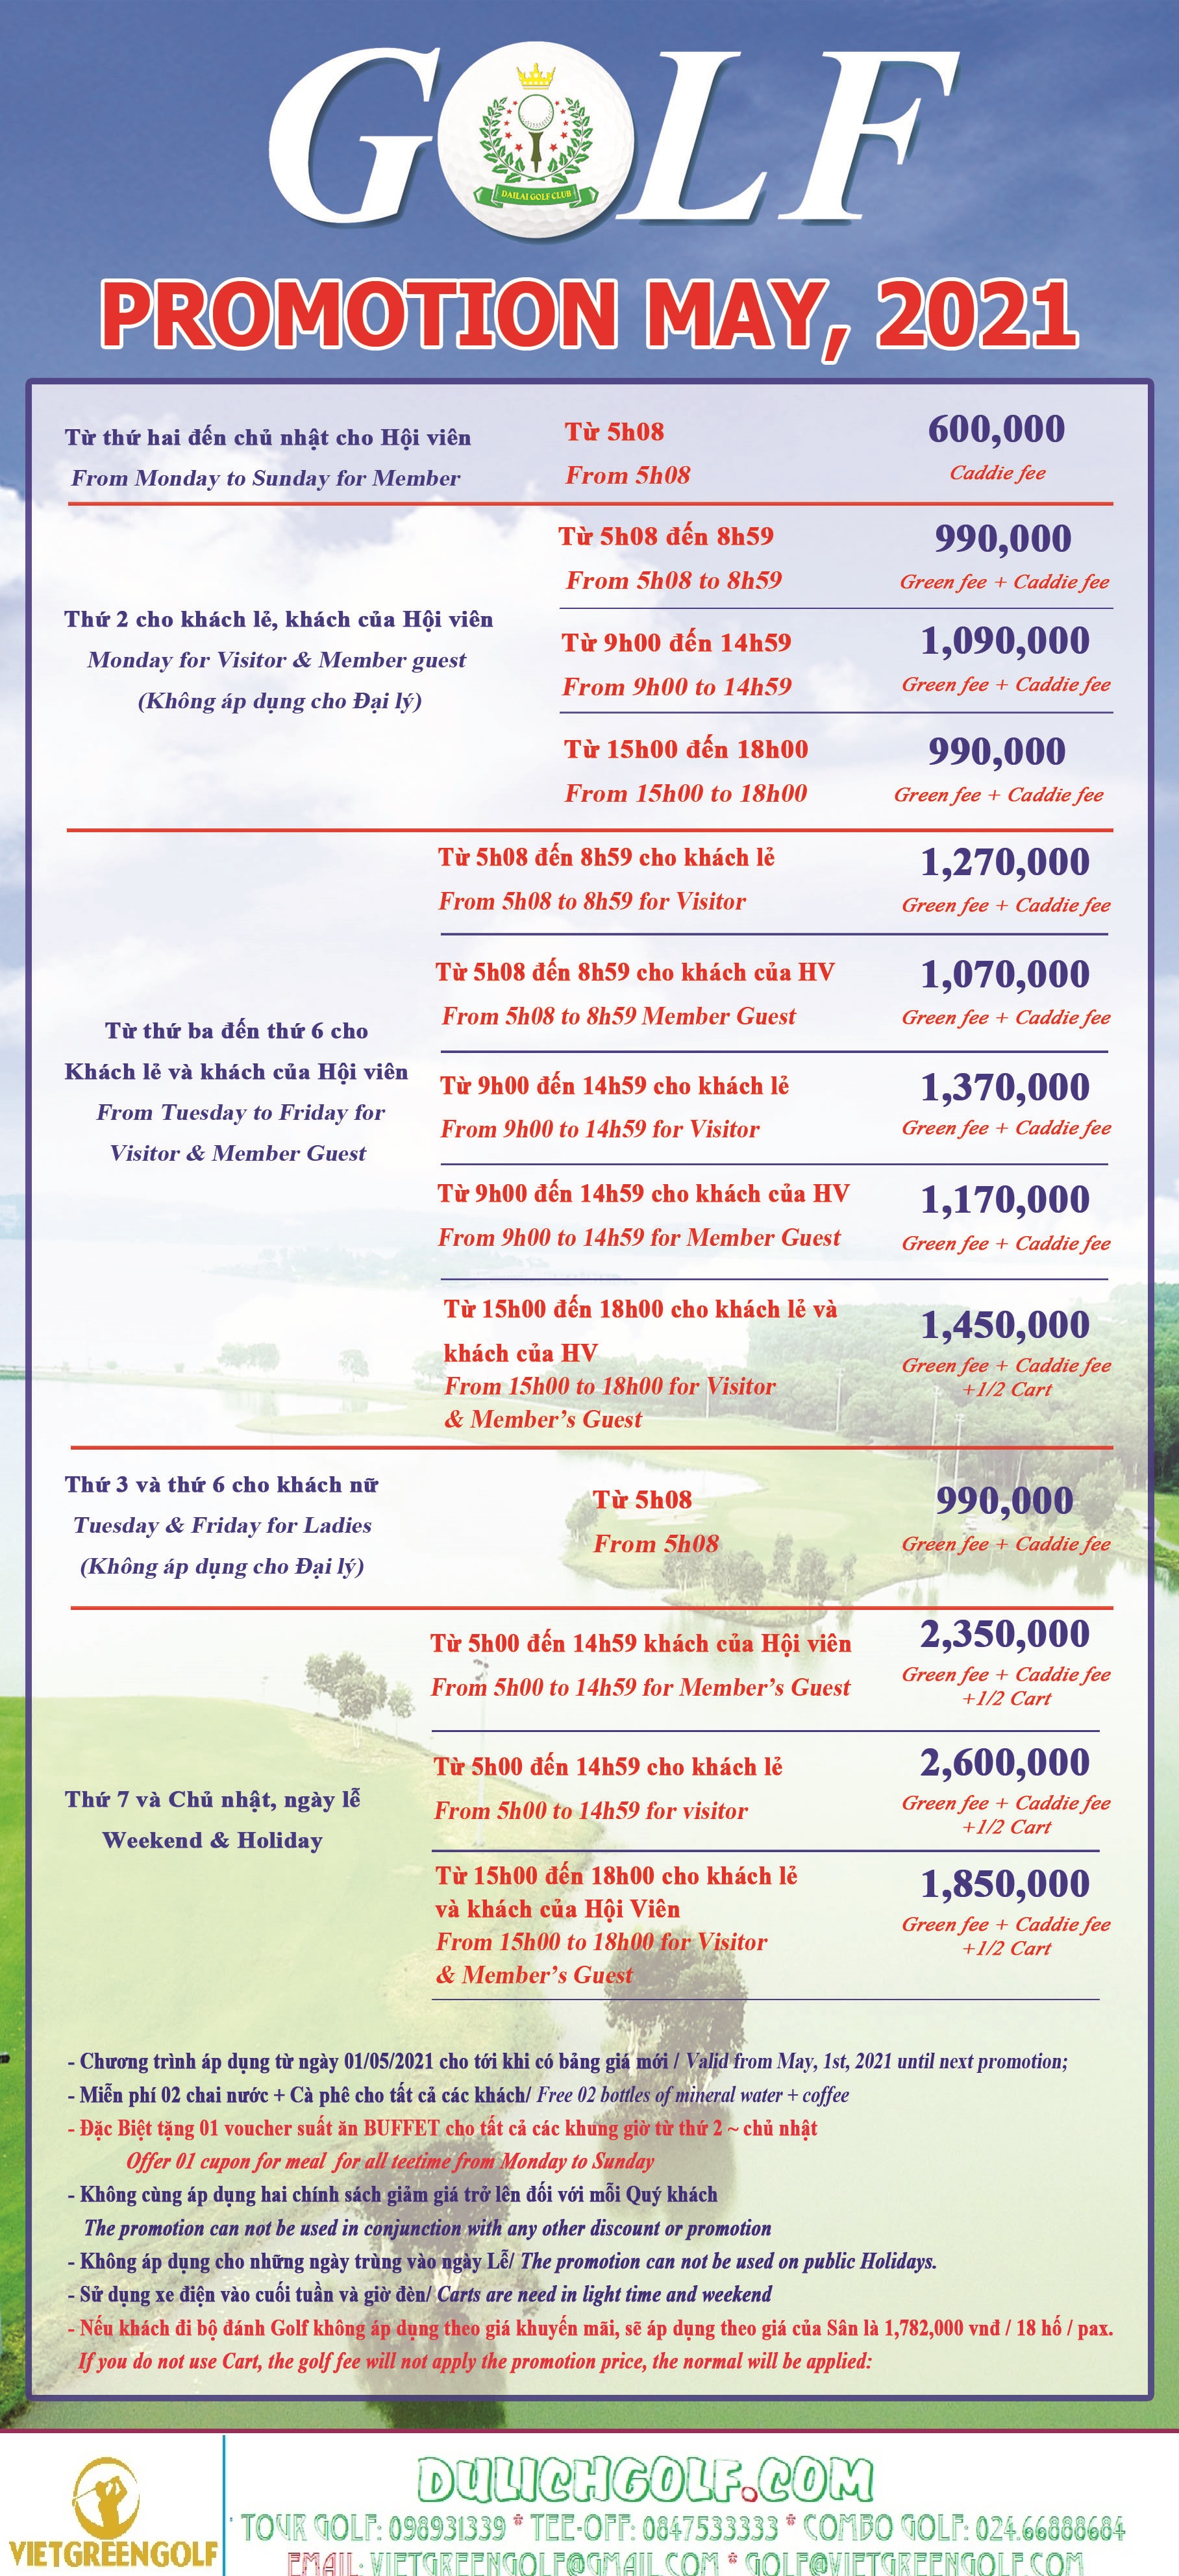 Bảng giá dịch vụ khách sạn và sân golf của Đại Lãi Golf Club, Viet Green Golf 